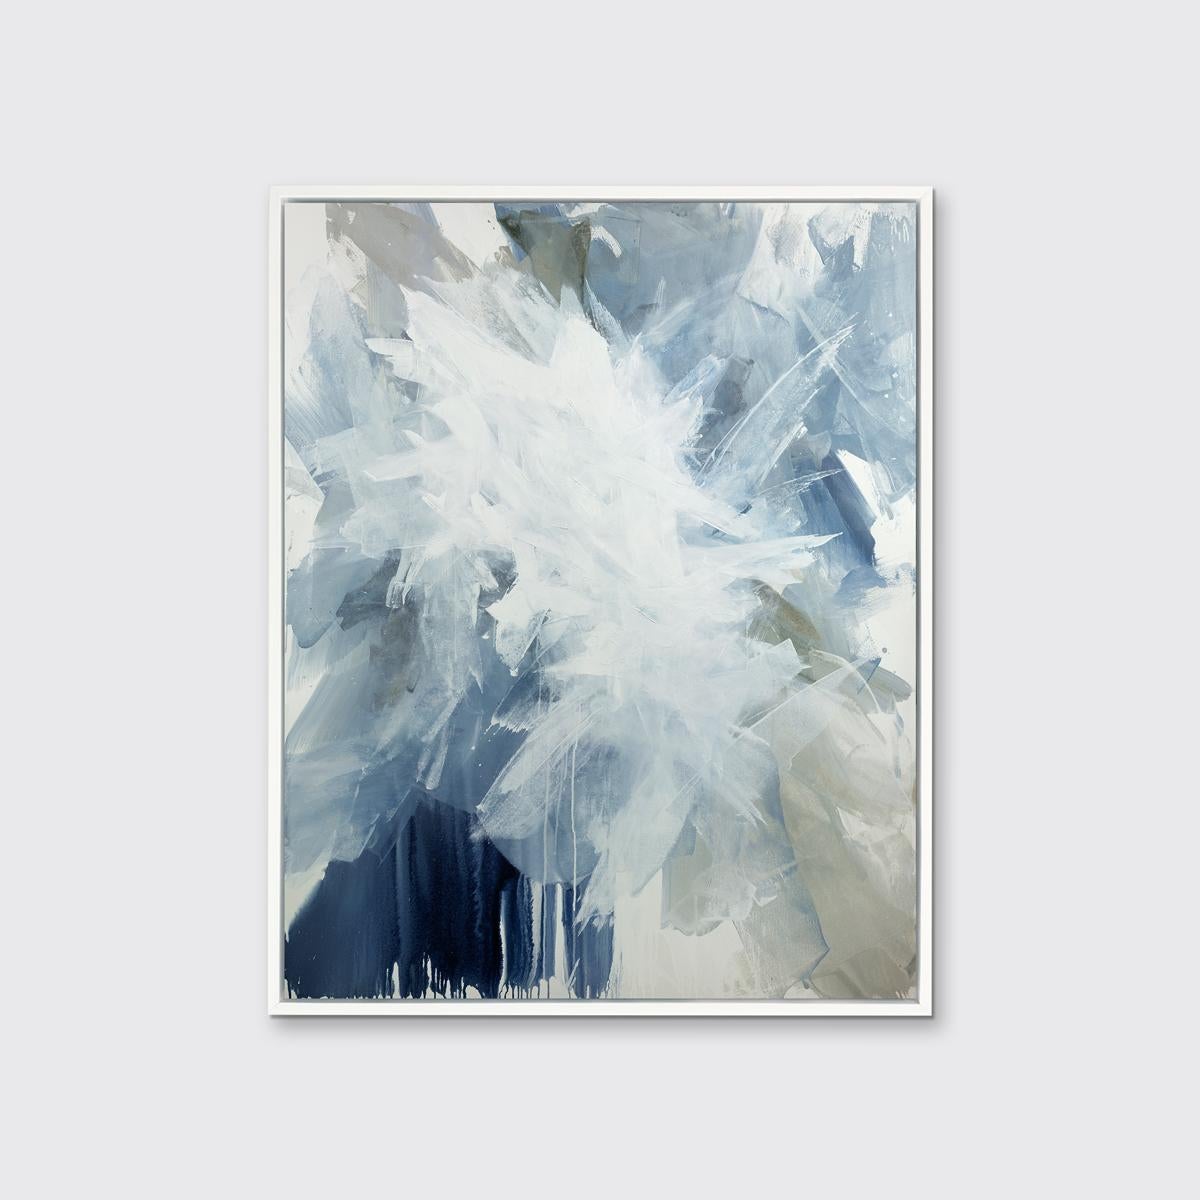 Dieser zeitgenössische Druck in limitierter Auflage von Teodora Guererra zeichnet sich durch große, energiegeladene Striche in verschiedenen Blautönen aus, die sich mit einem warmen, neutralen Grauton und Weiß überlagern und der abstrakten